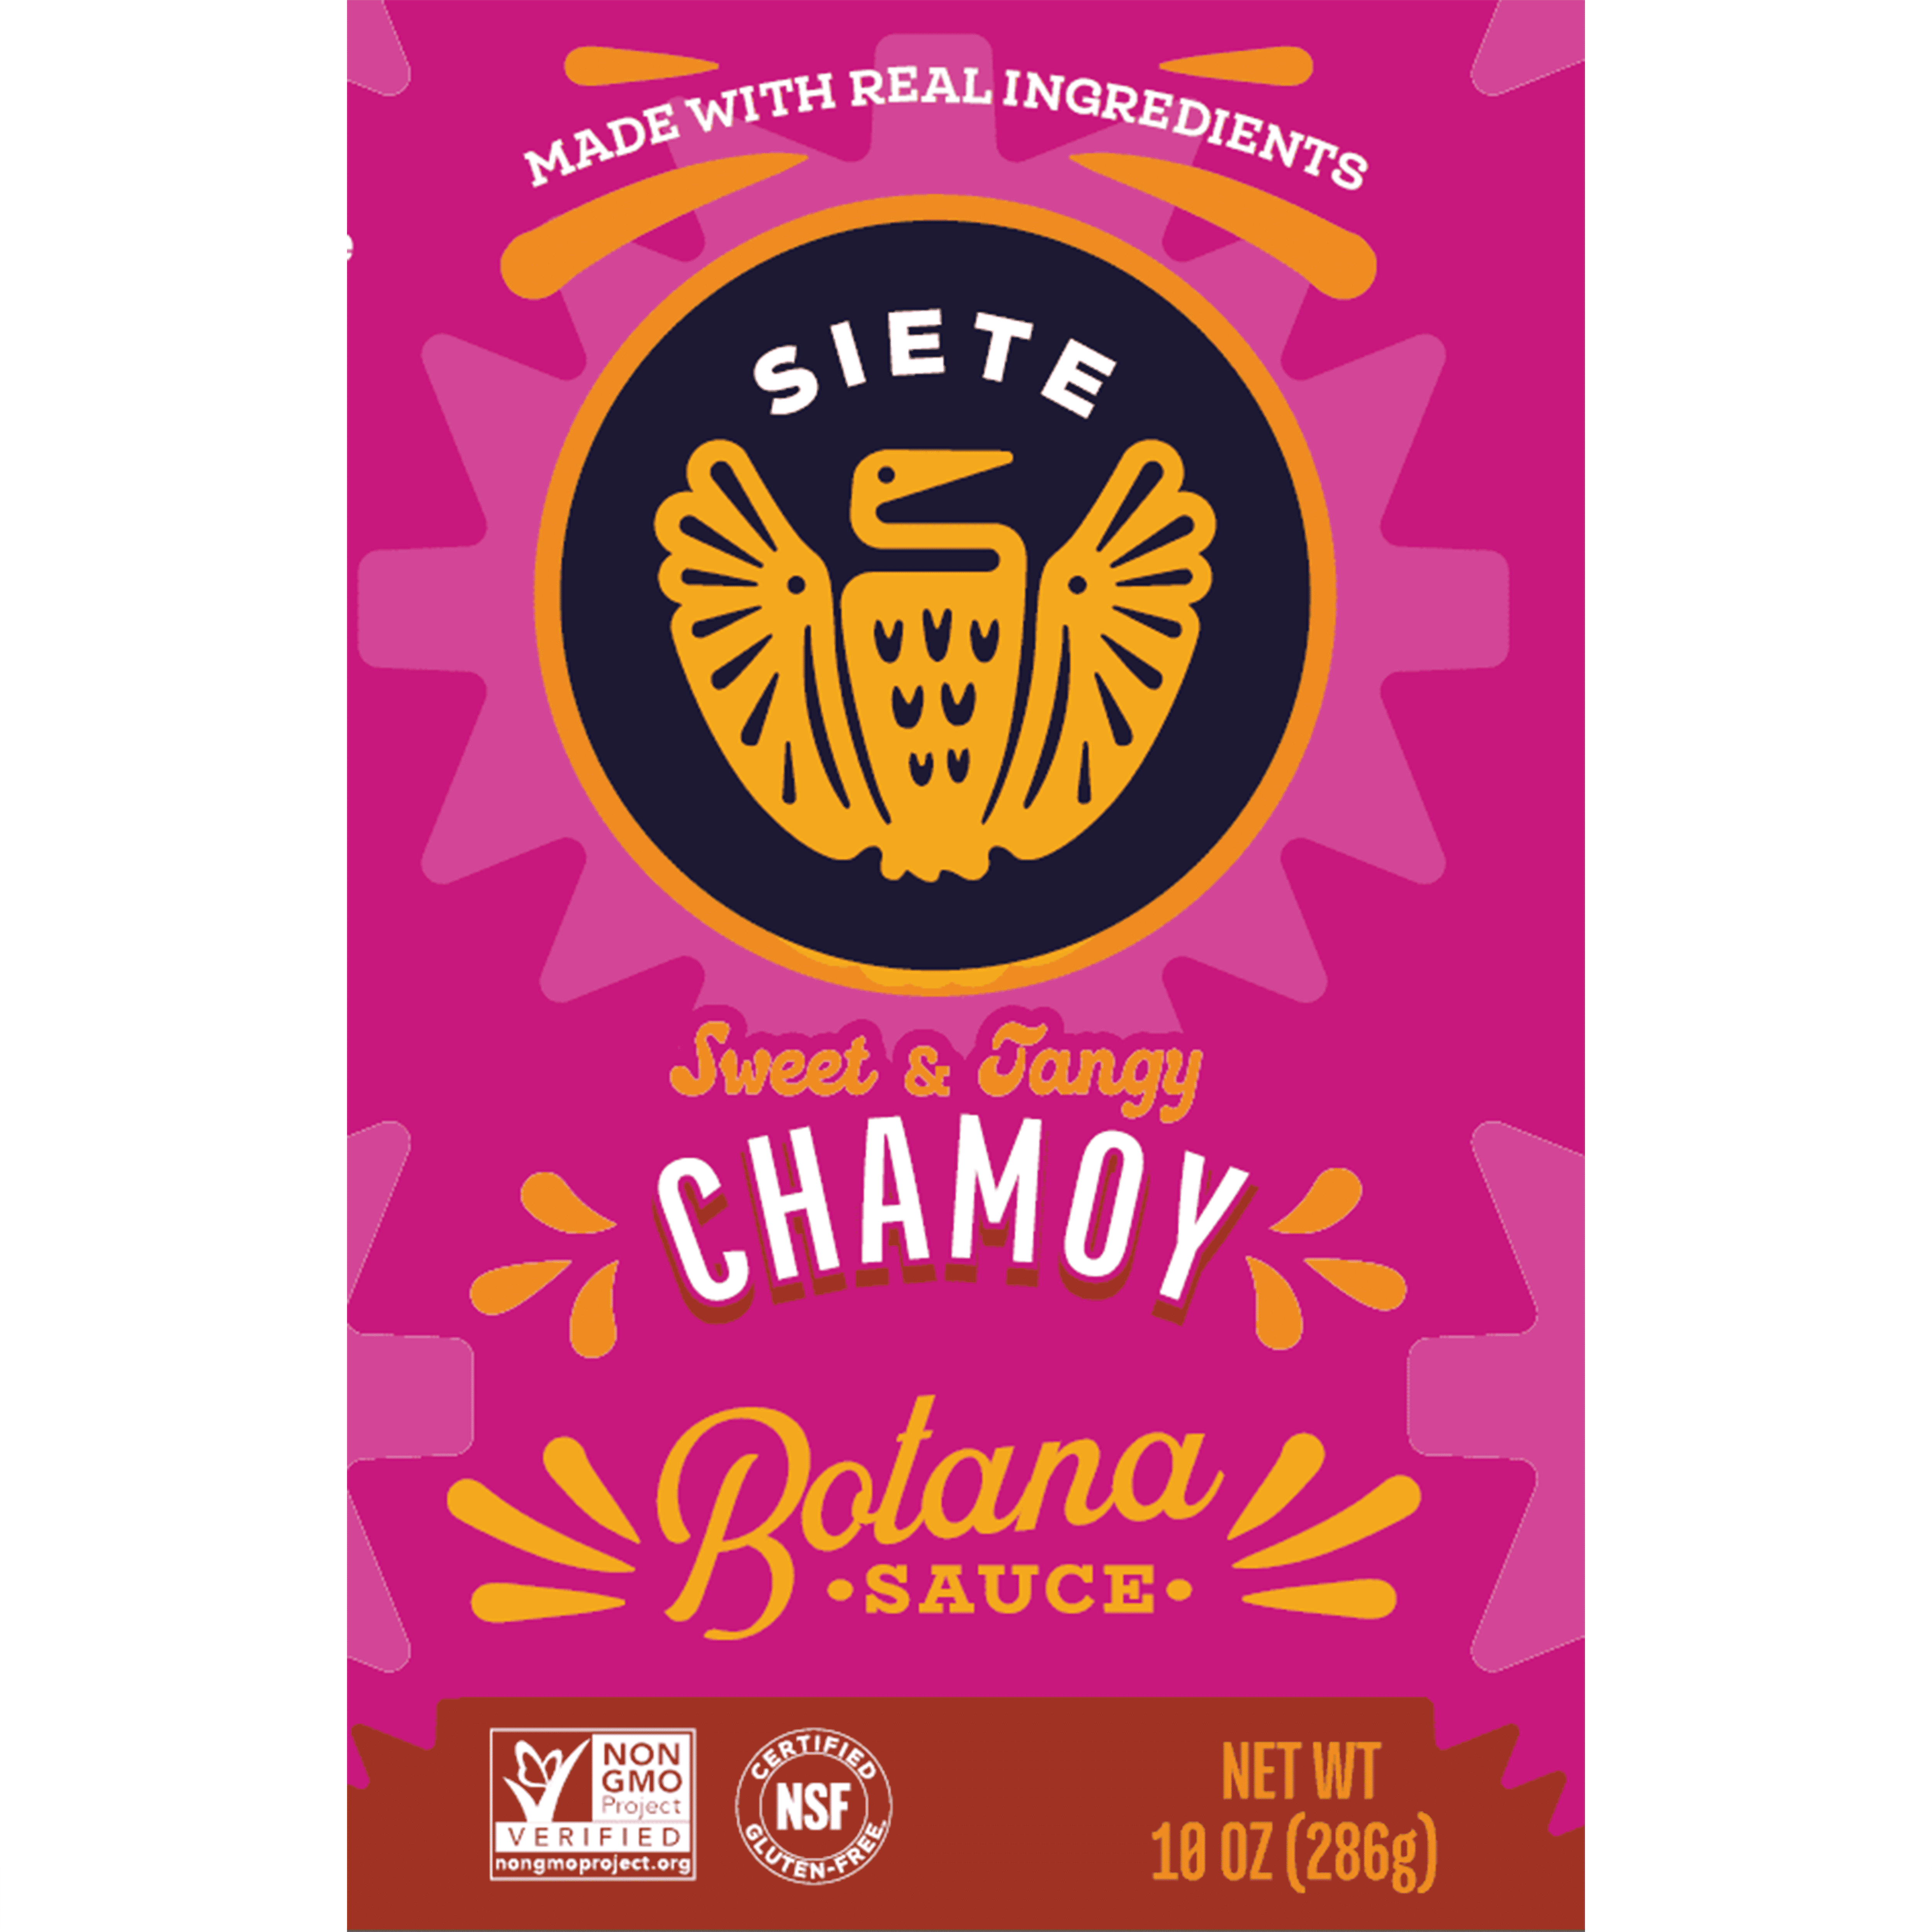 Chamoy Botana Sauce 10oz - 4 pack